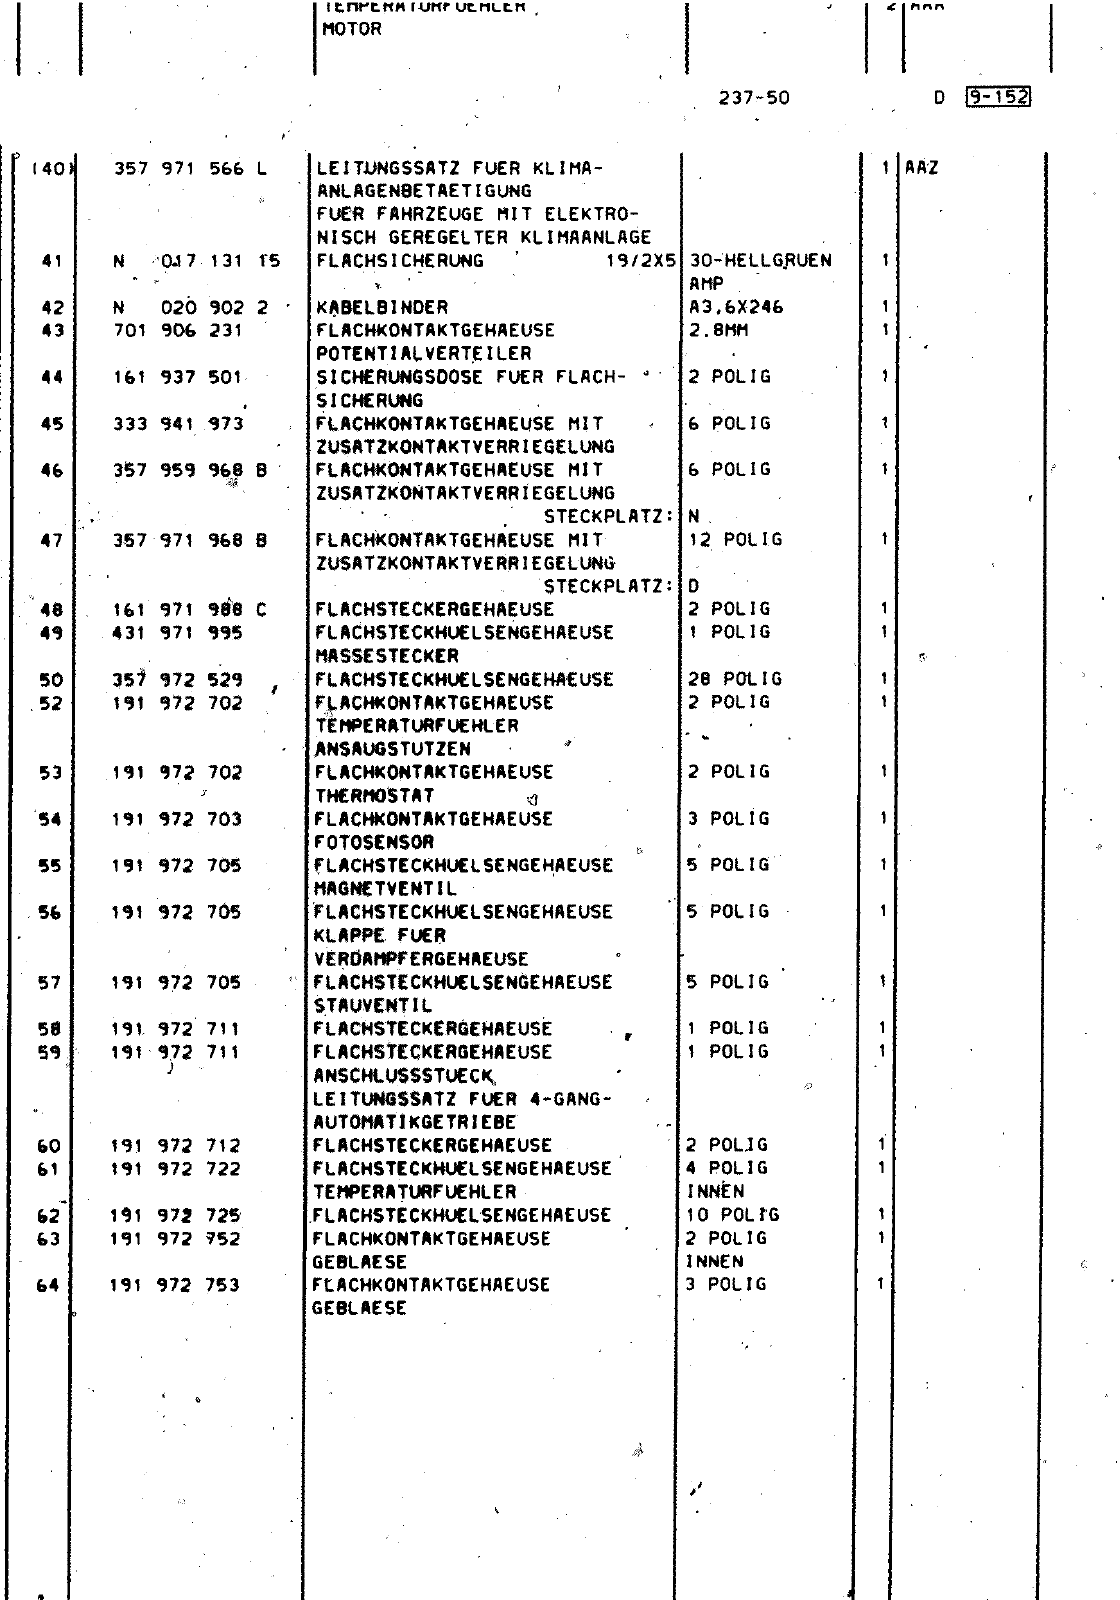 Vorschau Passat Mod 92-93 Seite 1204